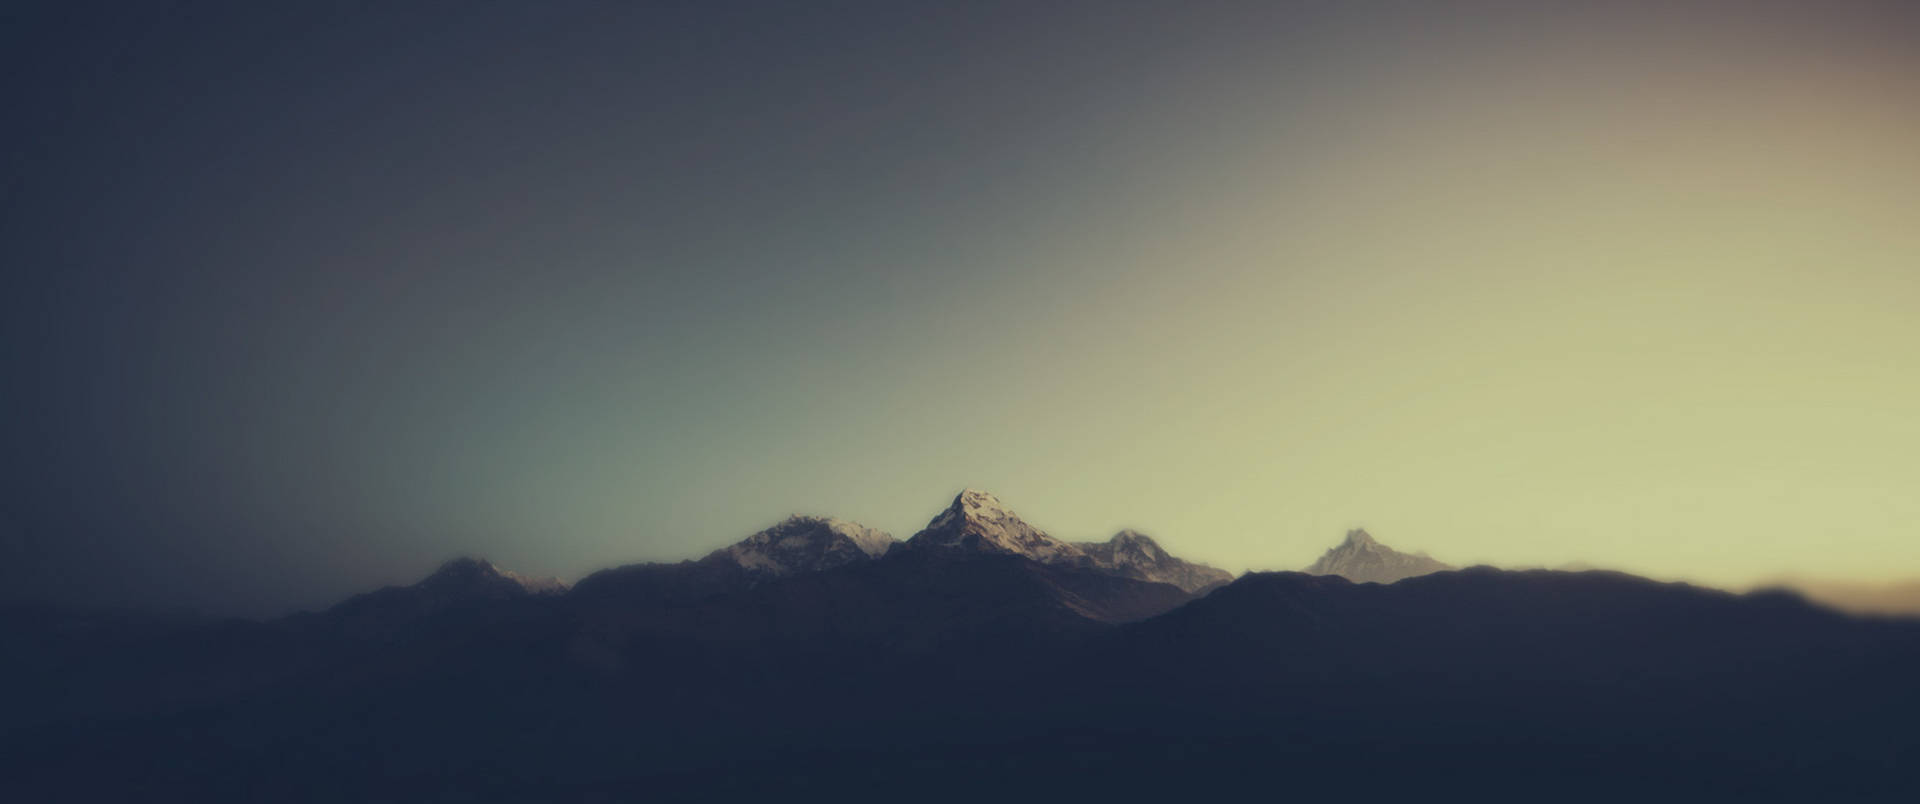 3440x1440 Minimalist Mountain Sunrise Background